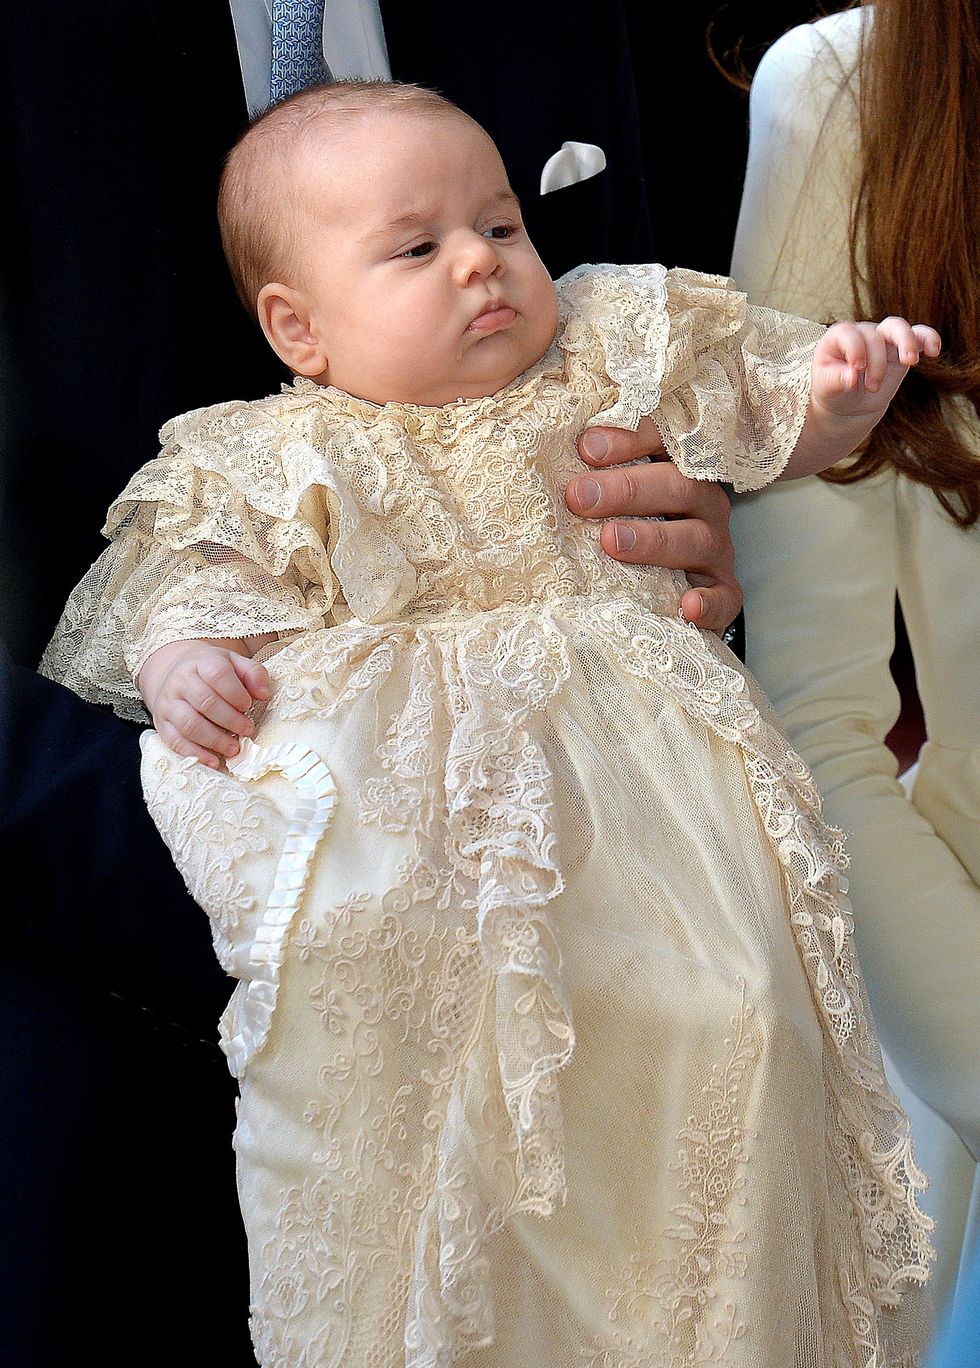 喬治王子,喬治小王子,prince george,威廉王子,凱特王妃,英國皇室